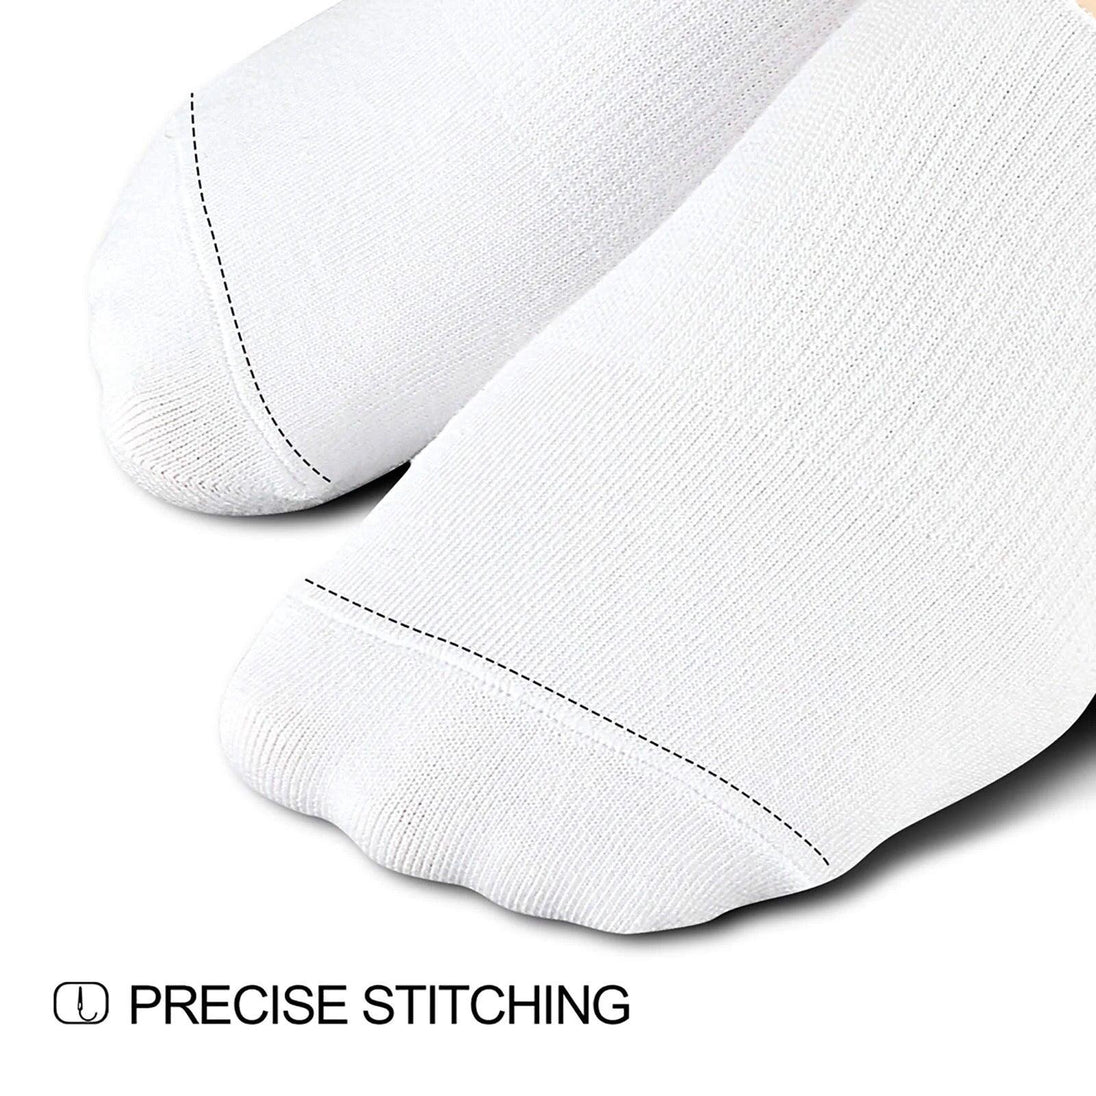 Men's Stitching Socks | Black and White No Show Socks